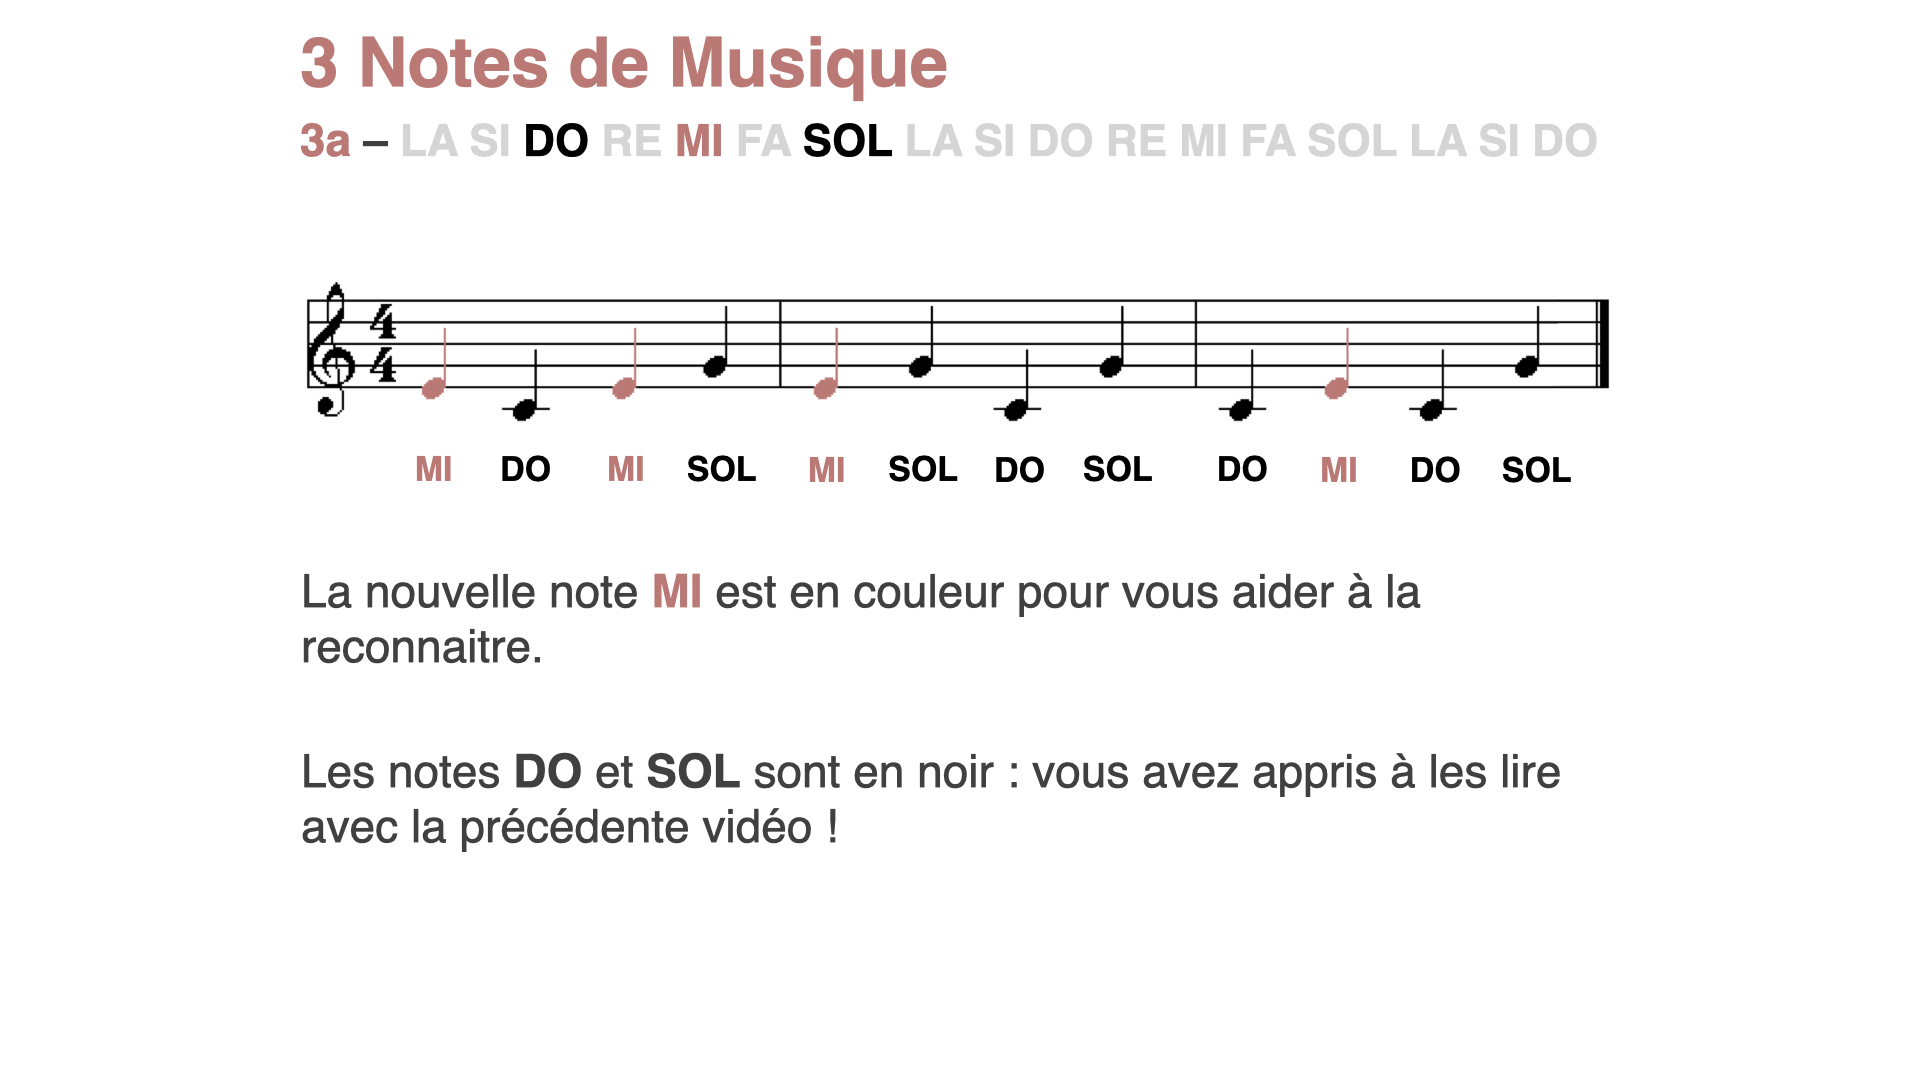 Lecture musicale 3 notes (DO MI SOL), nouvelle note en couleur : MI